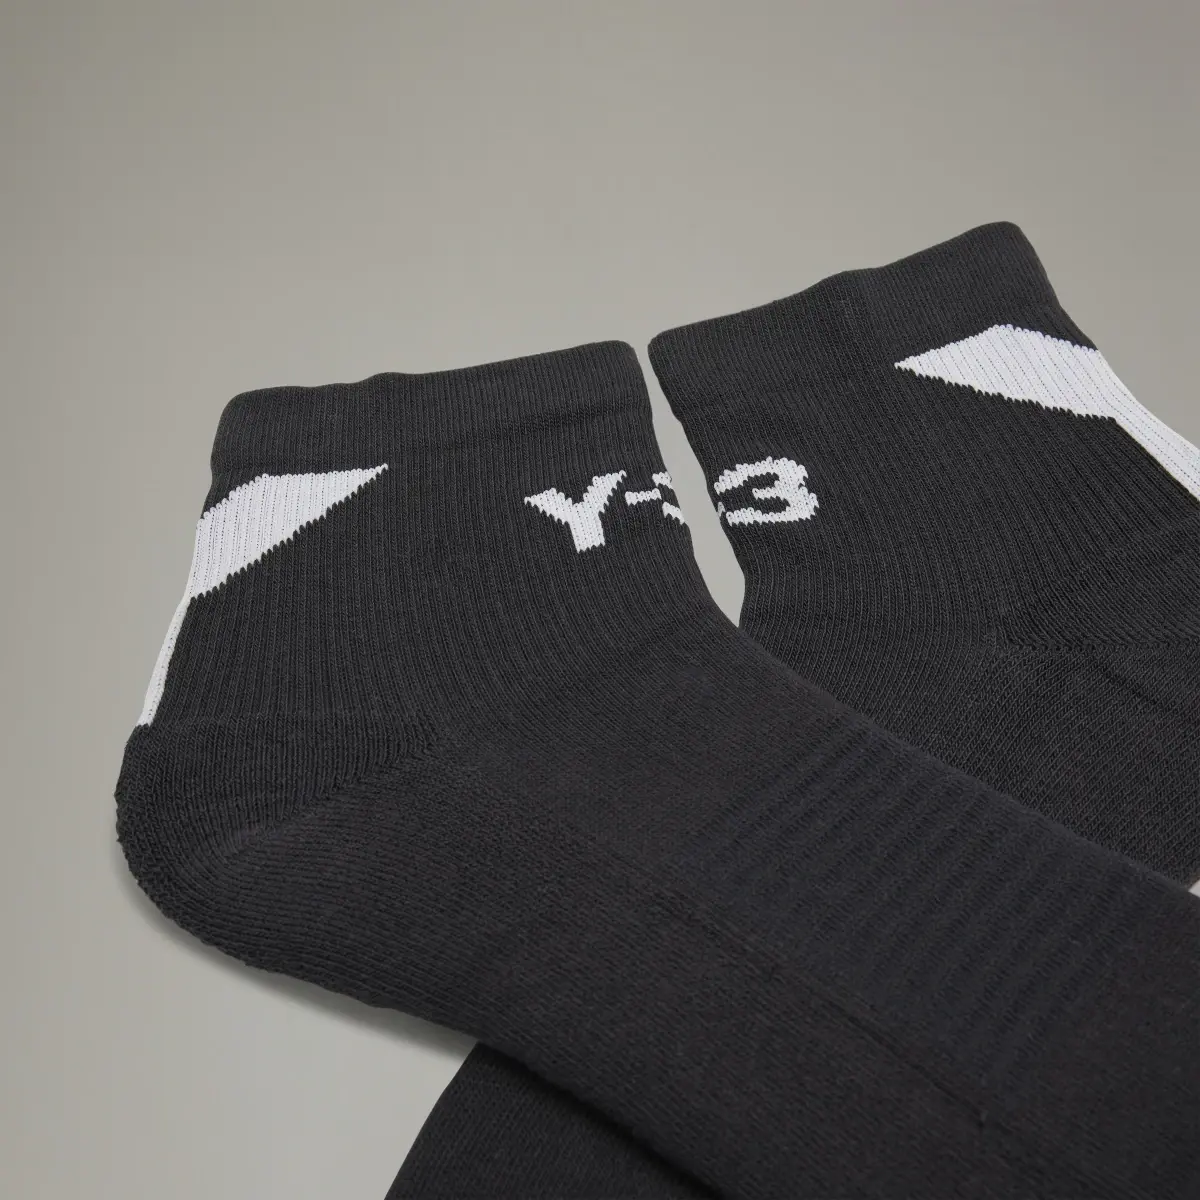 Adidas Y-3 Lo Socks. 3